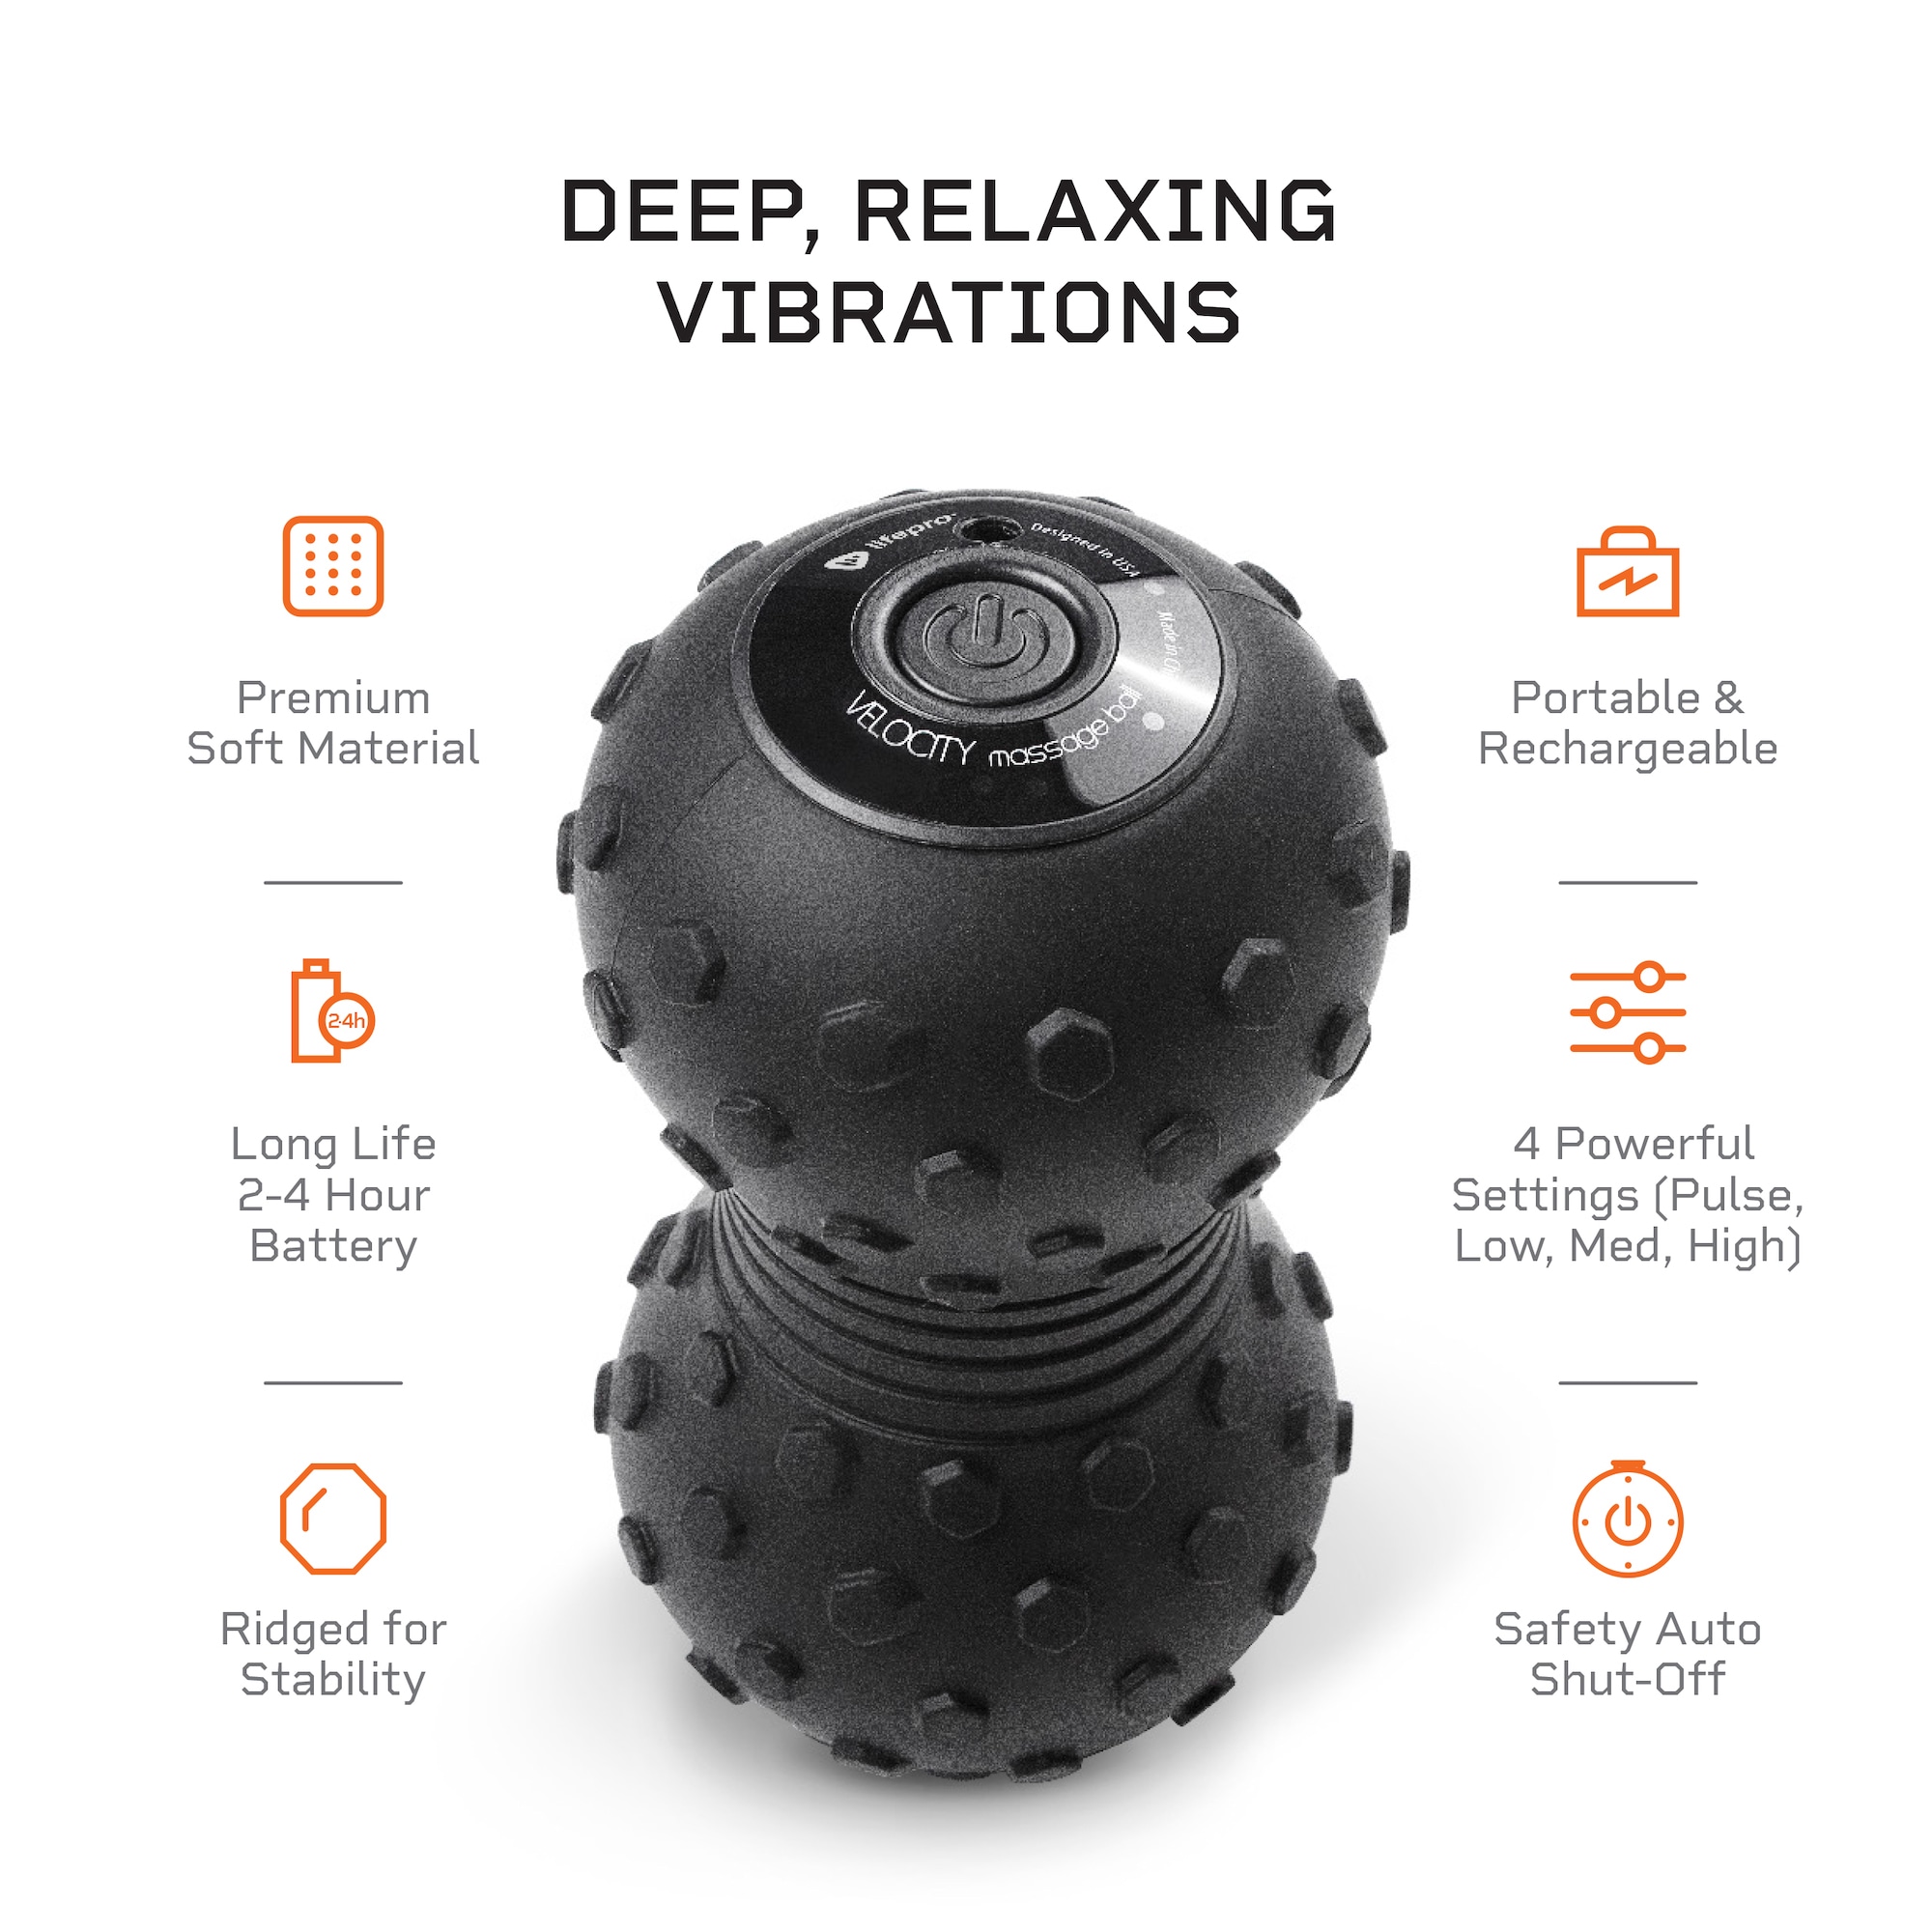 Lifepro Fitness Velocity Vibrating Ball 2 Battery Operated Massage Ball At